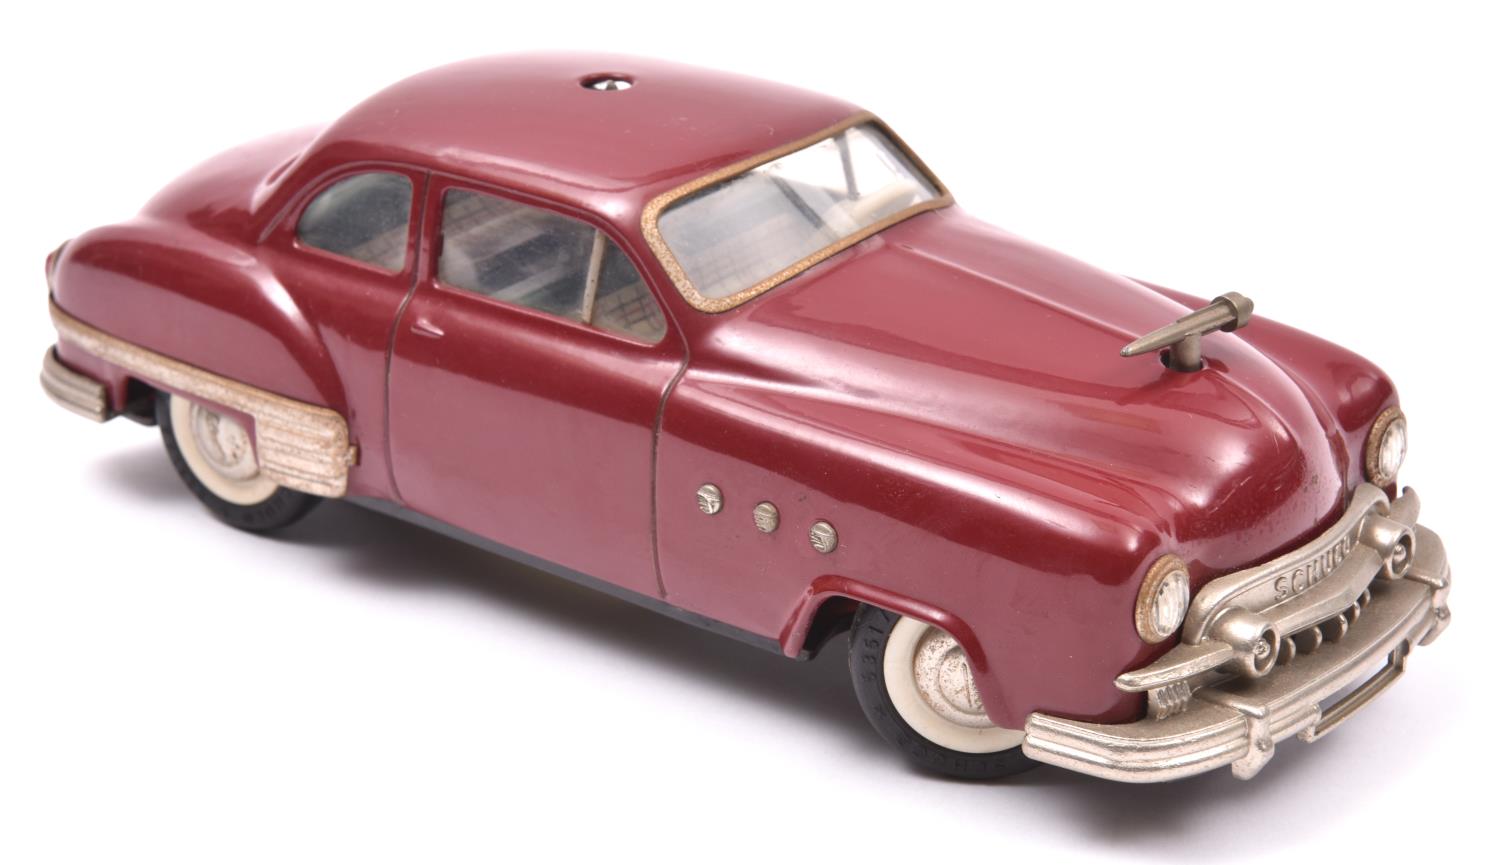 Schuco - Patient-Ingenico 5311 Tinplate 2 Door Saloon. A 1950's American style car in maroon with